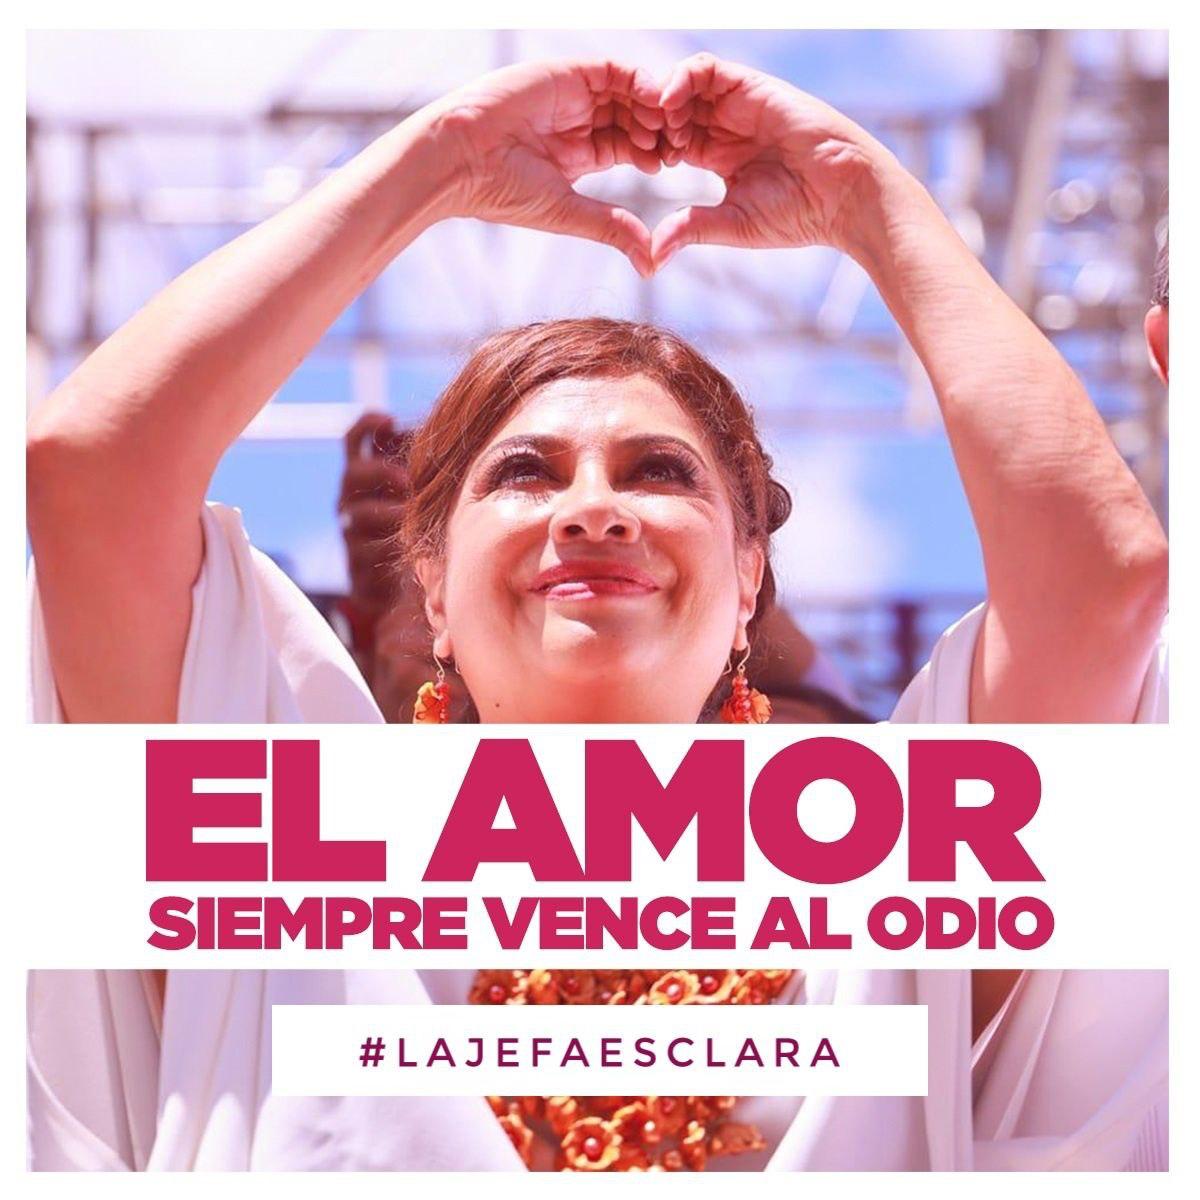 ¡El amor siempre vence al odio! 🫶 #ClaramenteGanamos con una candidata que demuestra profunda convicción y anhelo por el bienestar del pueblo de la Ciudad de México. 💪✨ #DebateChilango #LaJefaEsClara